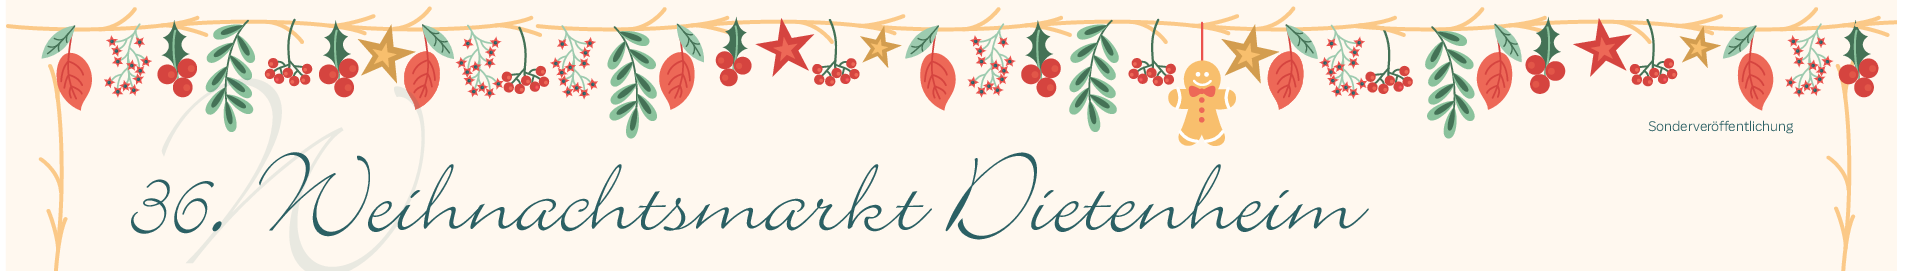 Weihnachtsmarkt in Dietenheim: Winterluft mit Weihnachtsduft